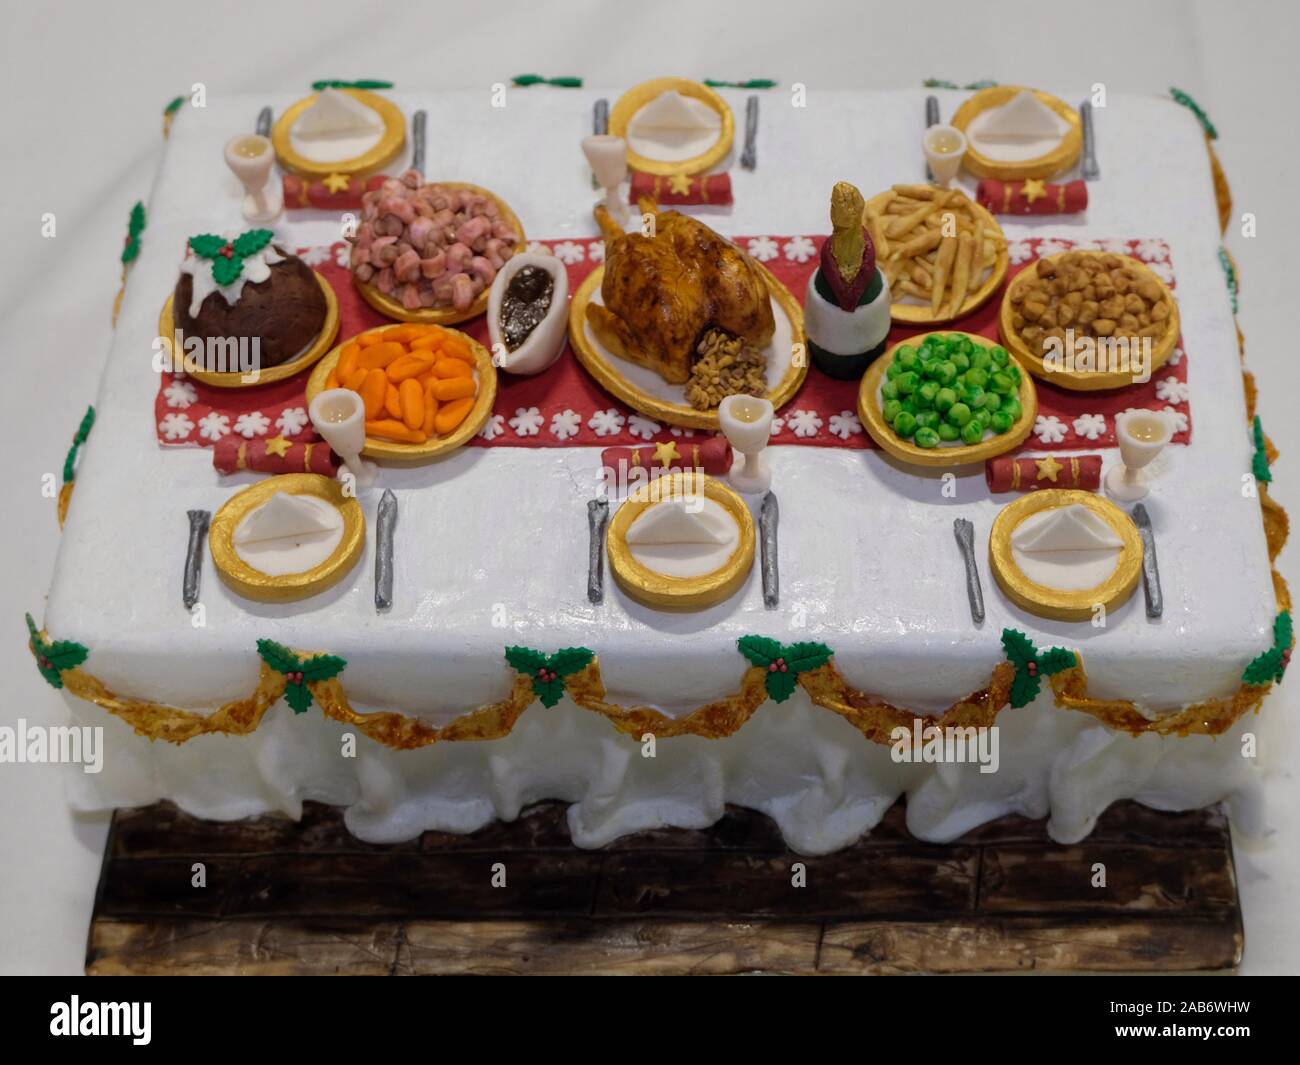 Le concours de gâteau de Noël au salon idéal de la maison de Noël 2019. Ici, un concurrent a créé une table complète avec un dîner de Noël. Banque D'Images